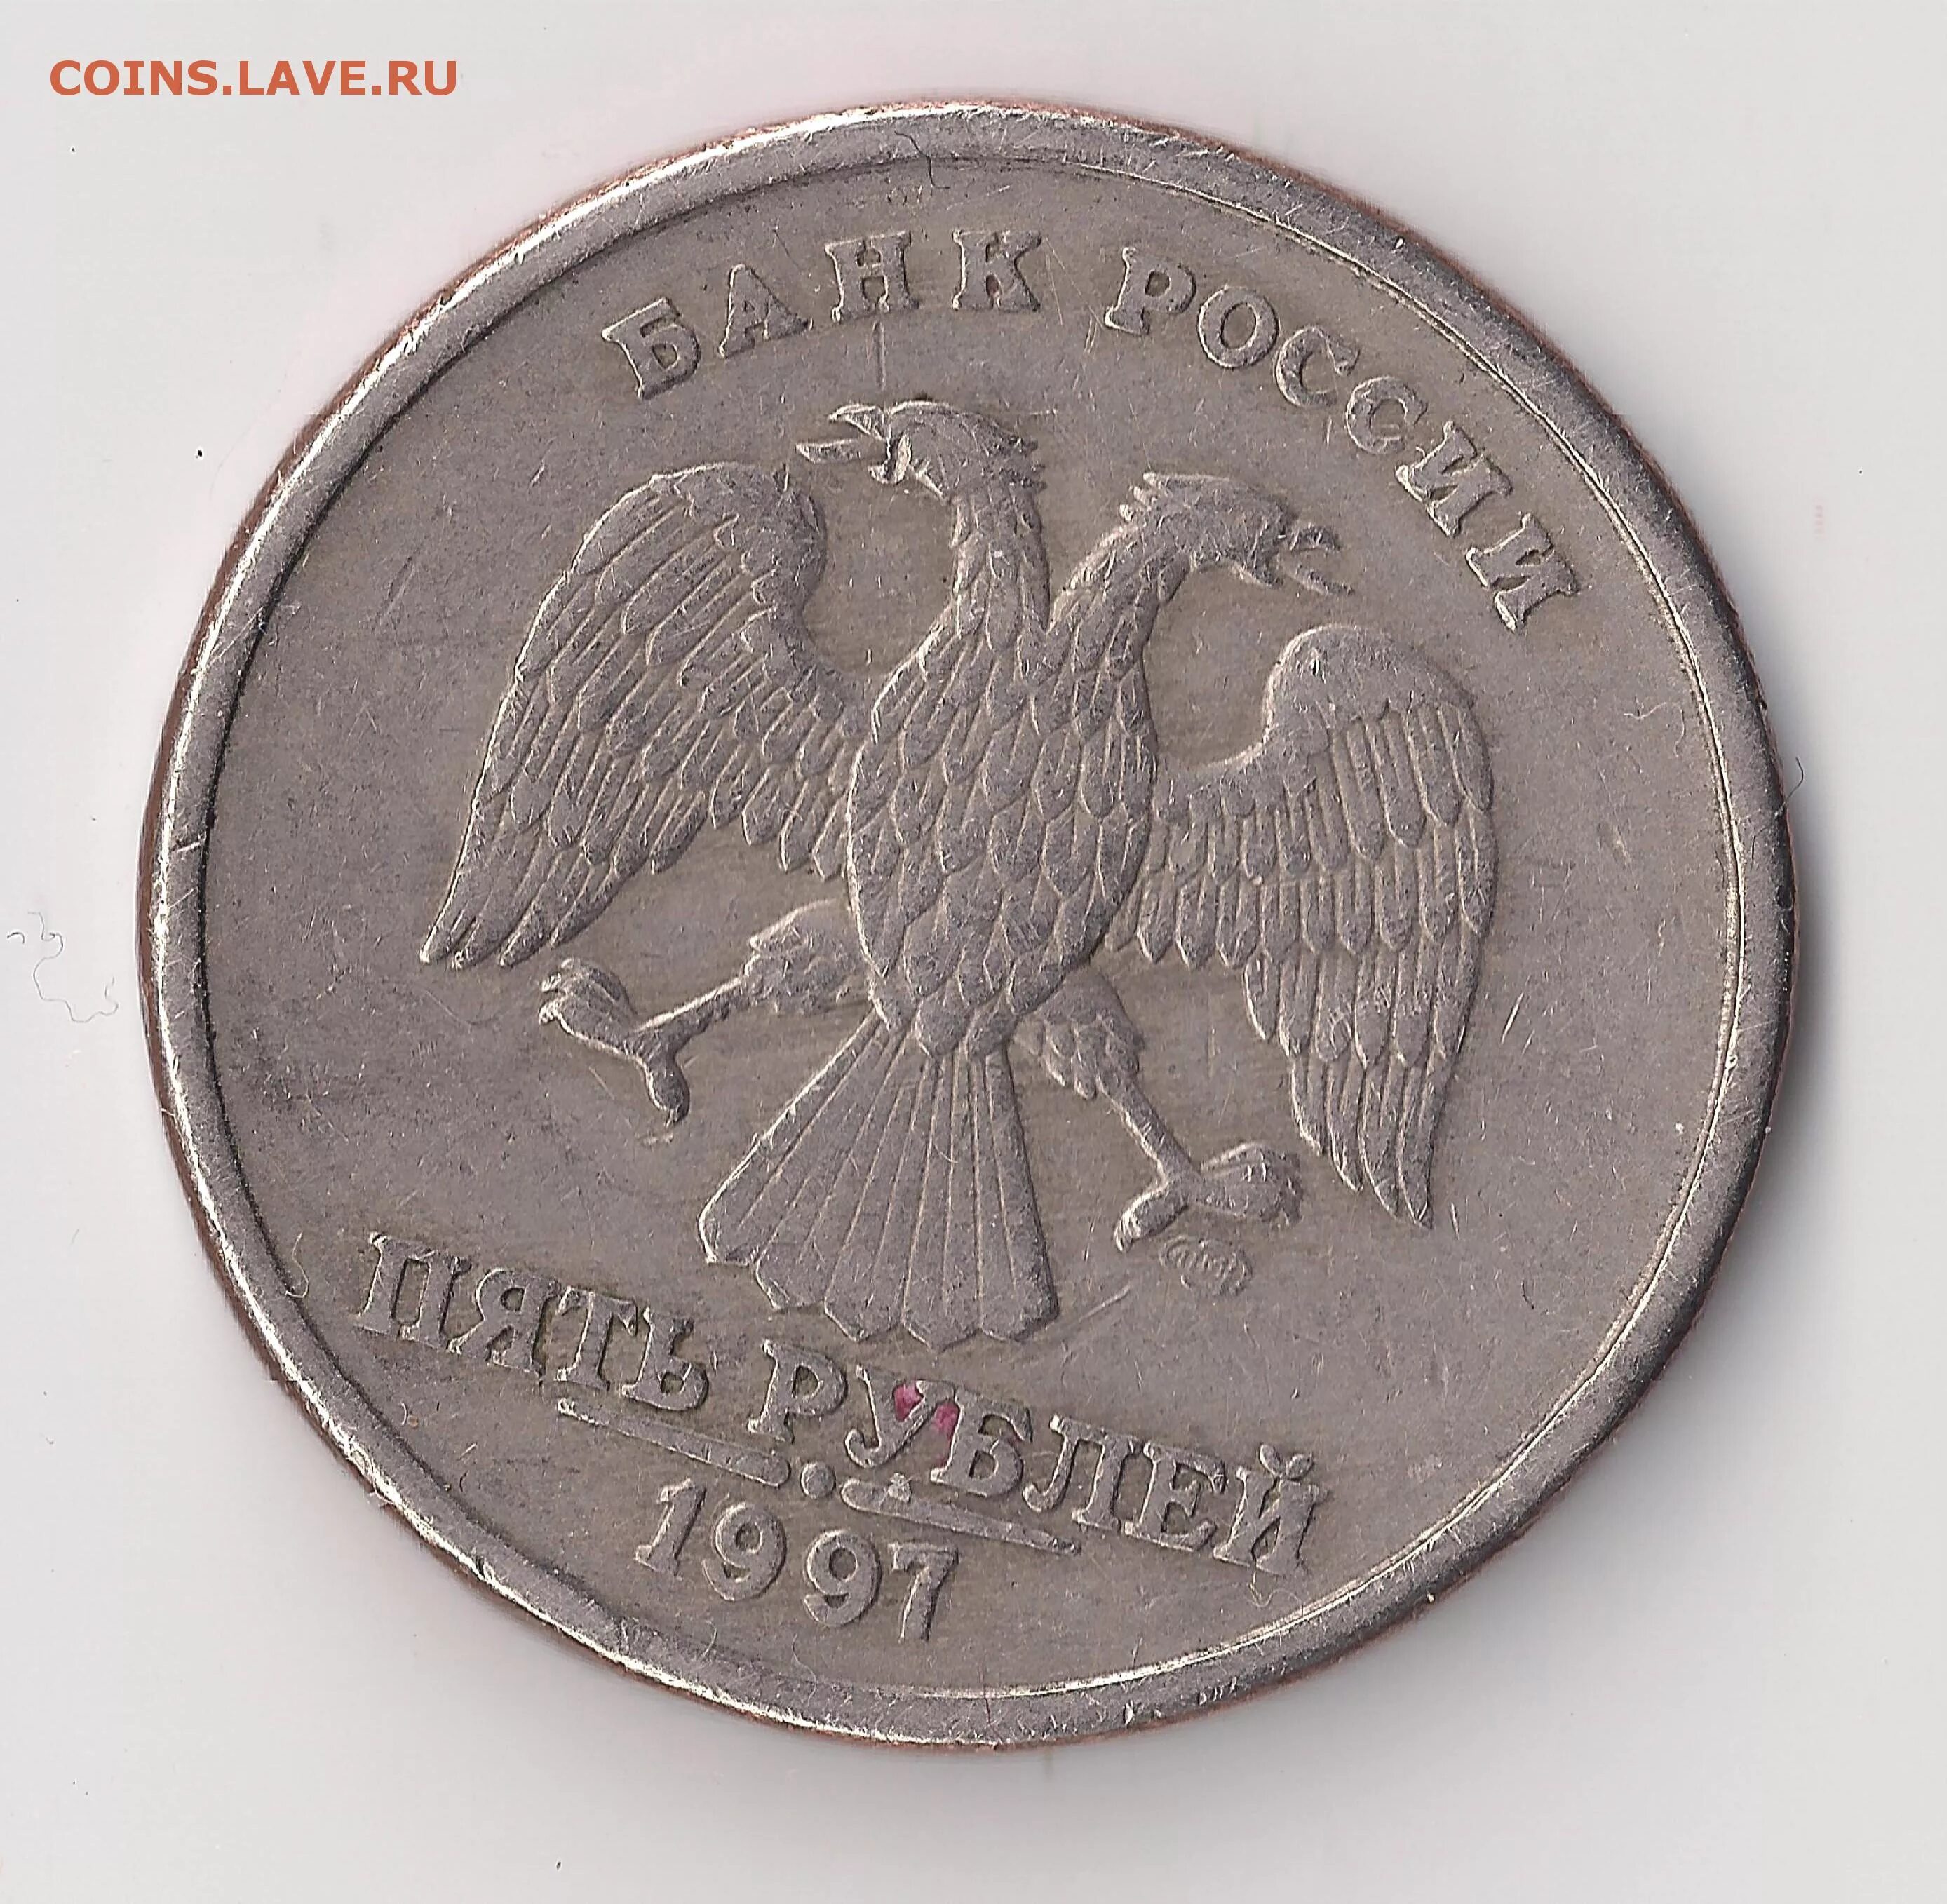 5 рублей новгород 1997. 5 Рублей 1997 раскол. Рубль 1997 раскол. 5 Рублей 1997 СП. 5 Рублей 1997 года Орел брак.